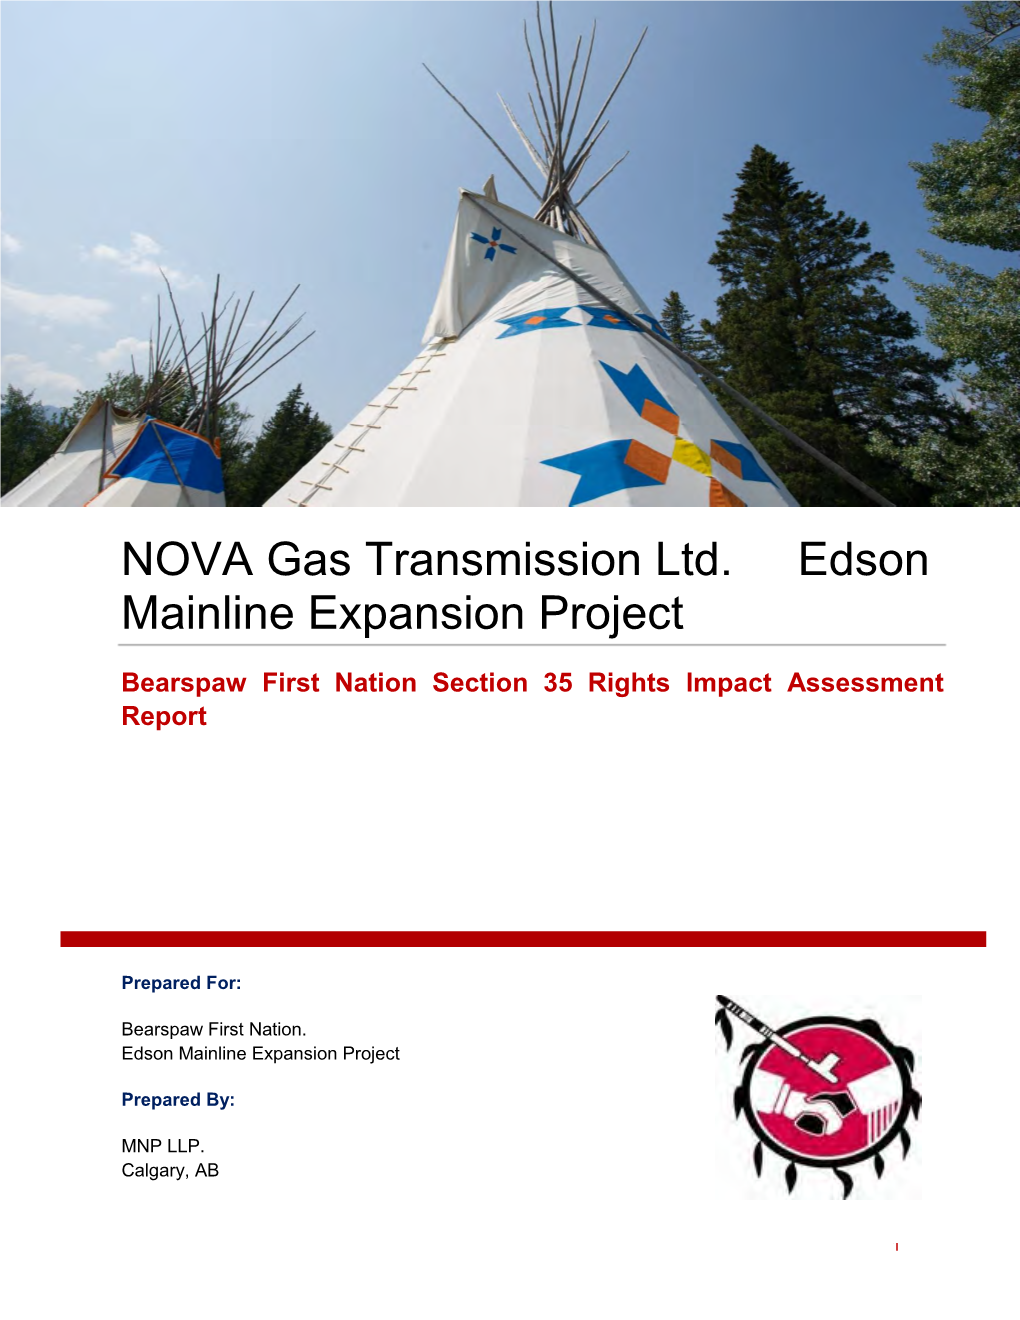 NOVA Gas Transmission Ltd. Edson Mainline Expansion Project